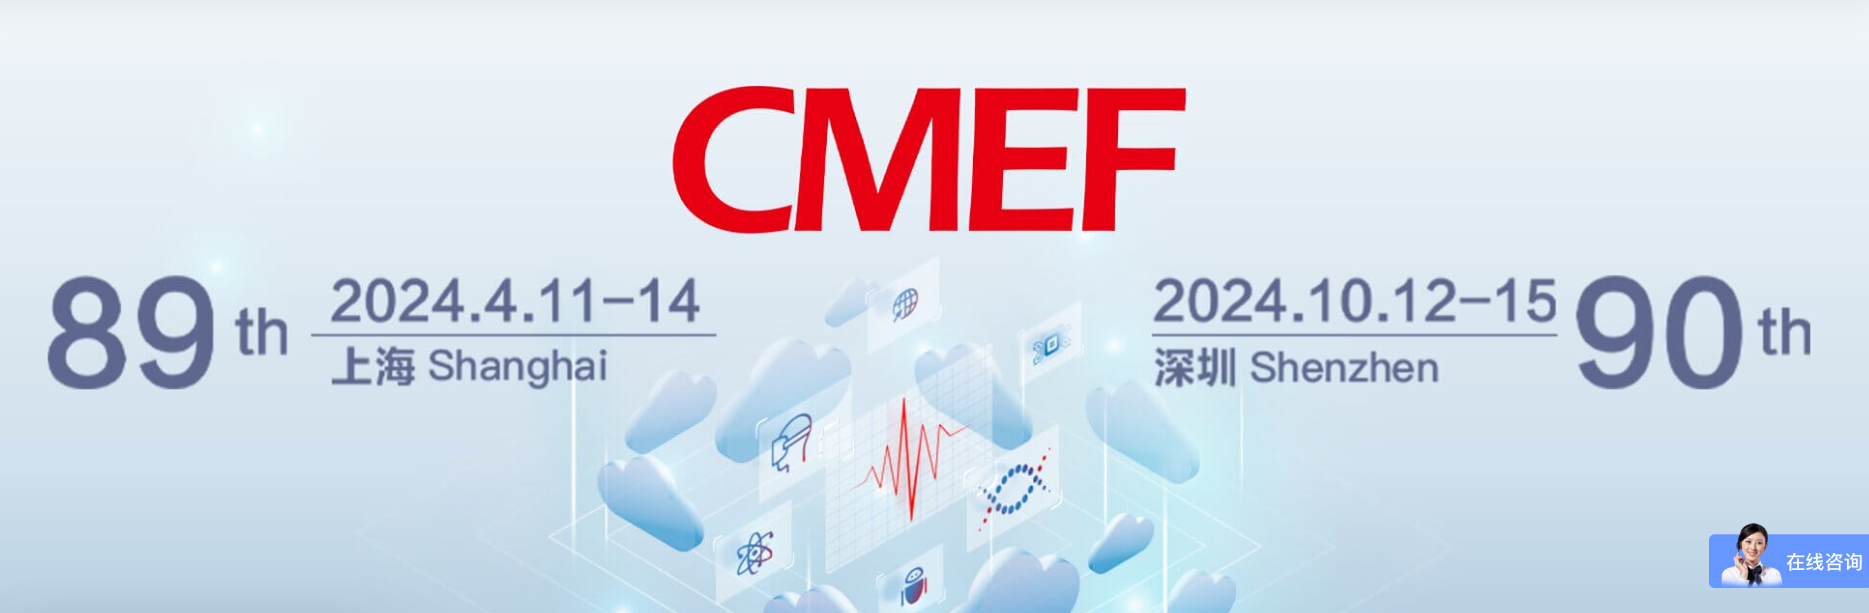 聚焦新科技 洞观全产业--第89届CMEF中国国际医疗器械博览会如约而至！